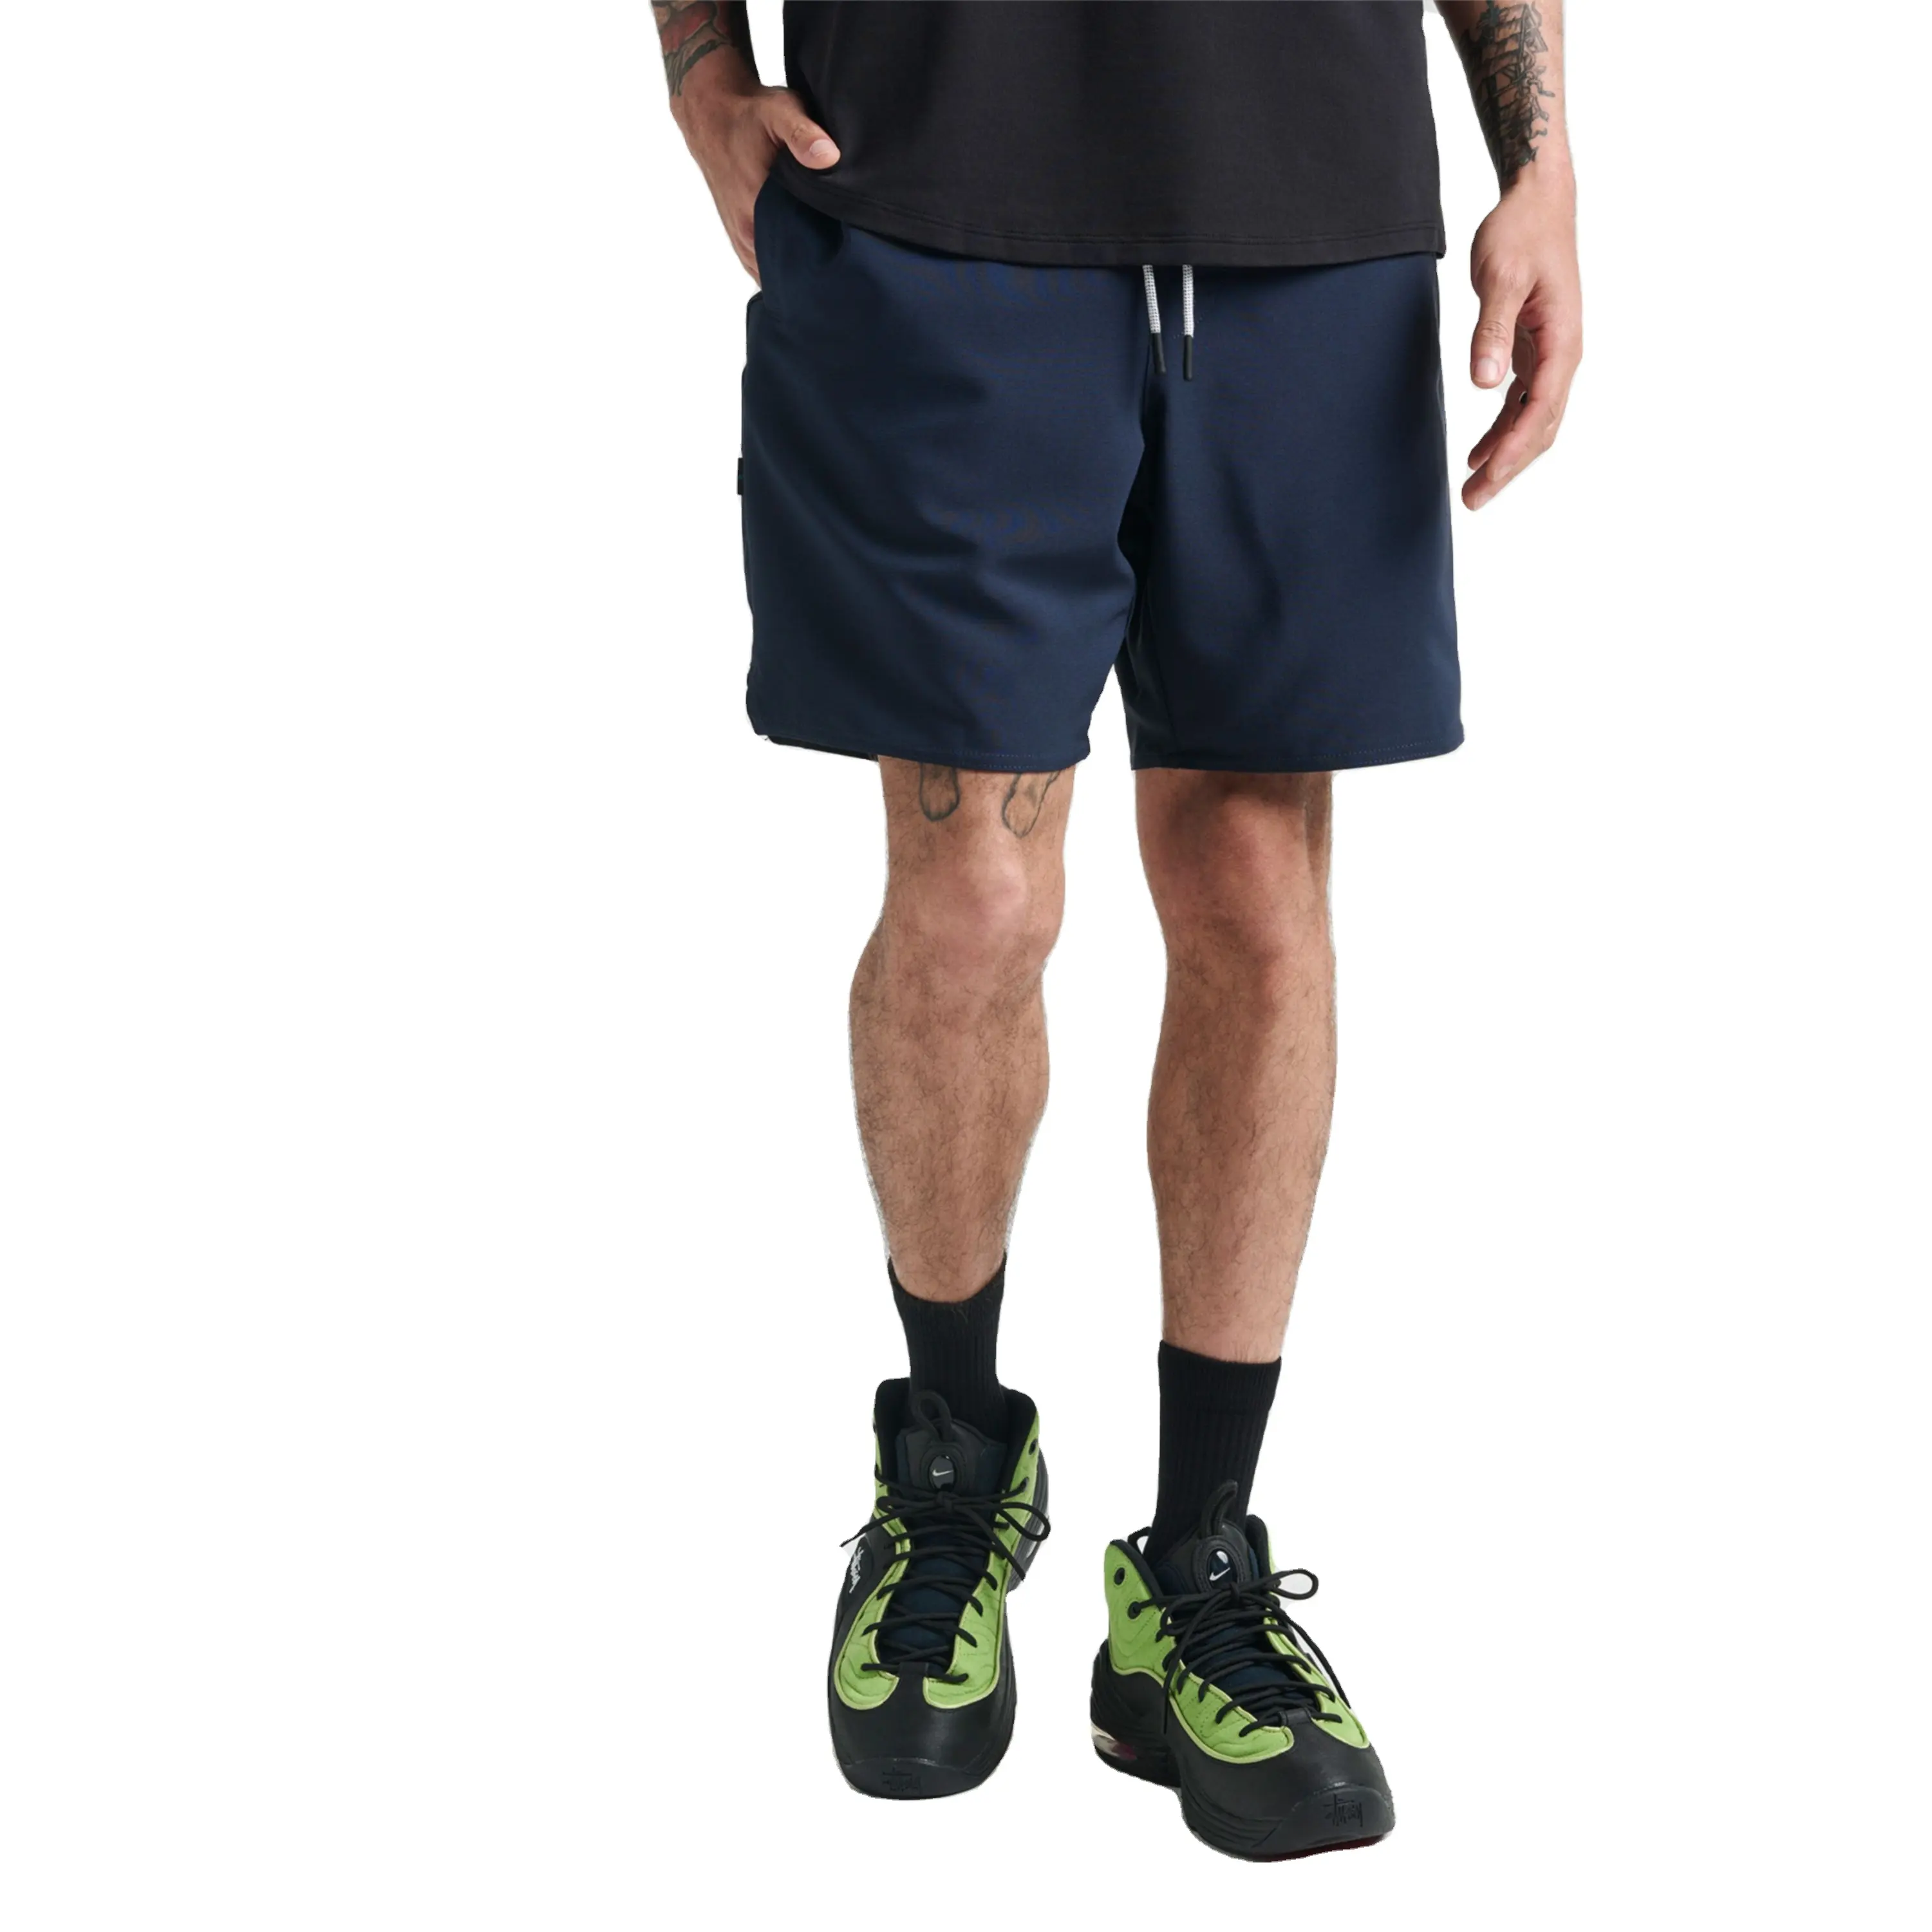 Pantalones cortos personalizados de secado rápido para hombre, pantalones cortos deportivos para entrenamiento físico, venta al por mayor, pantalones cortos para hombre, ropa de gimnasio